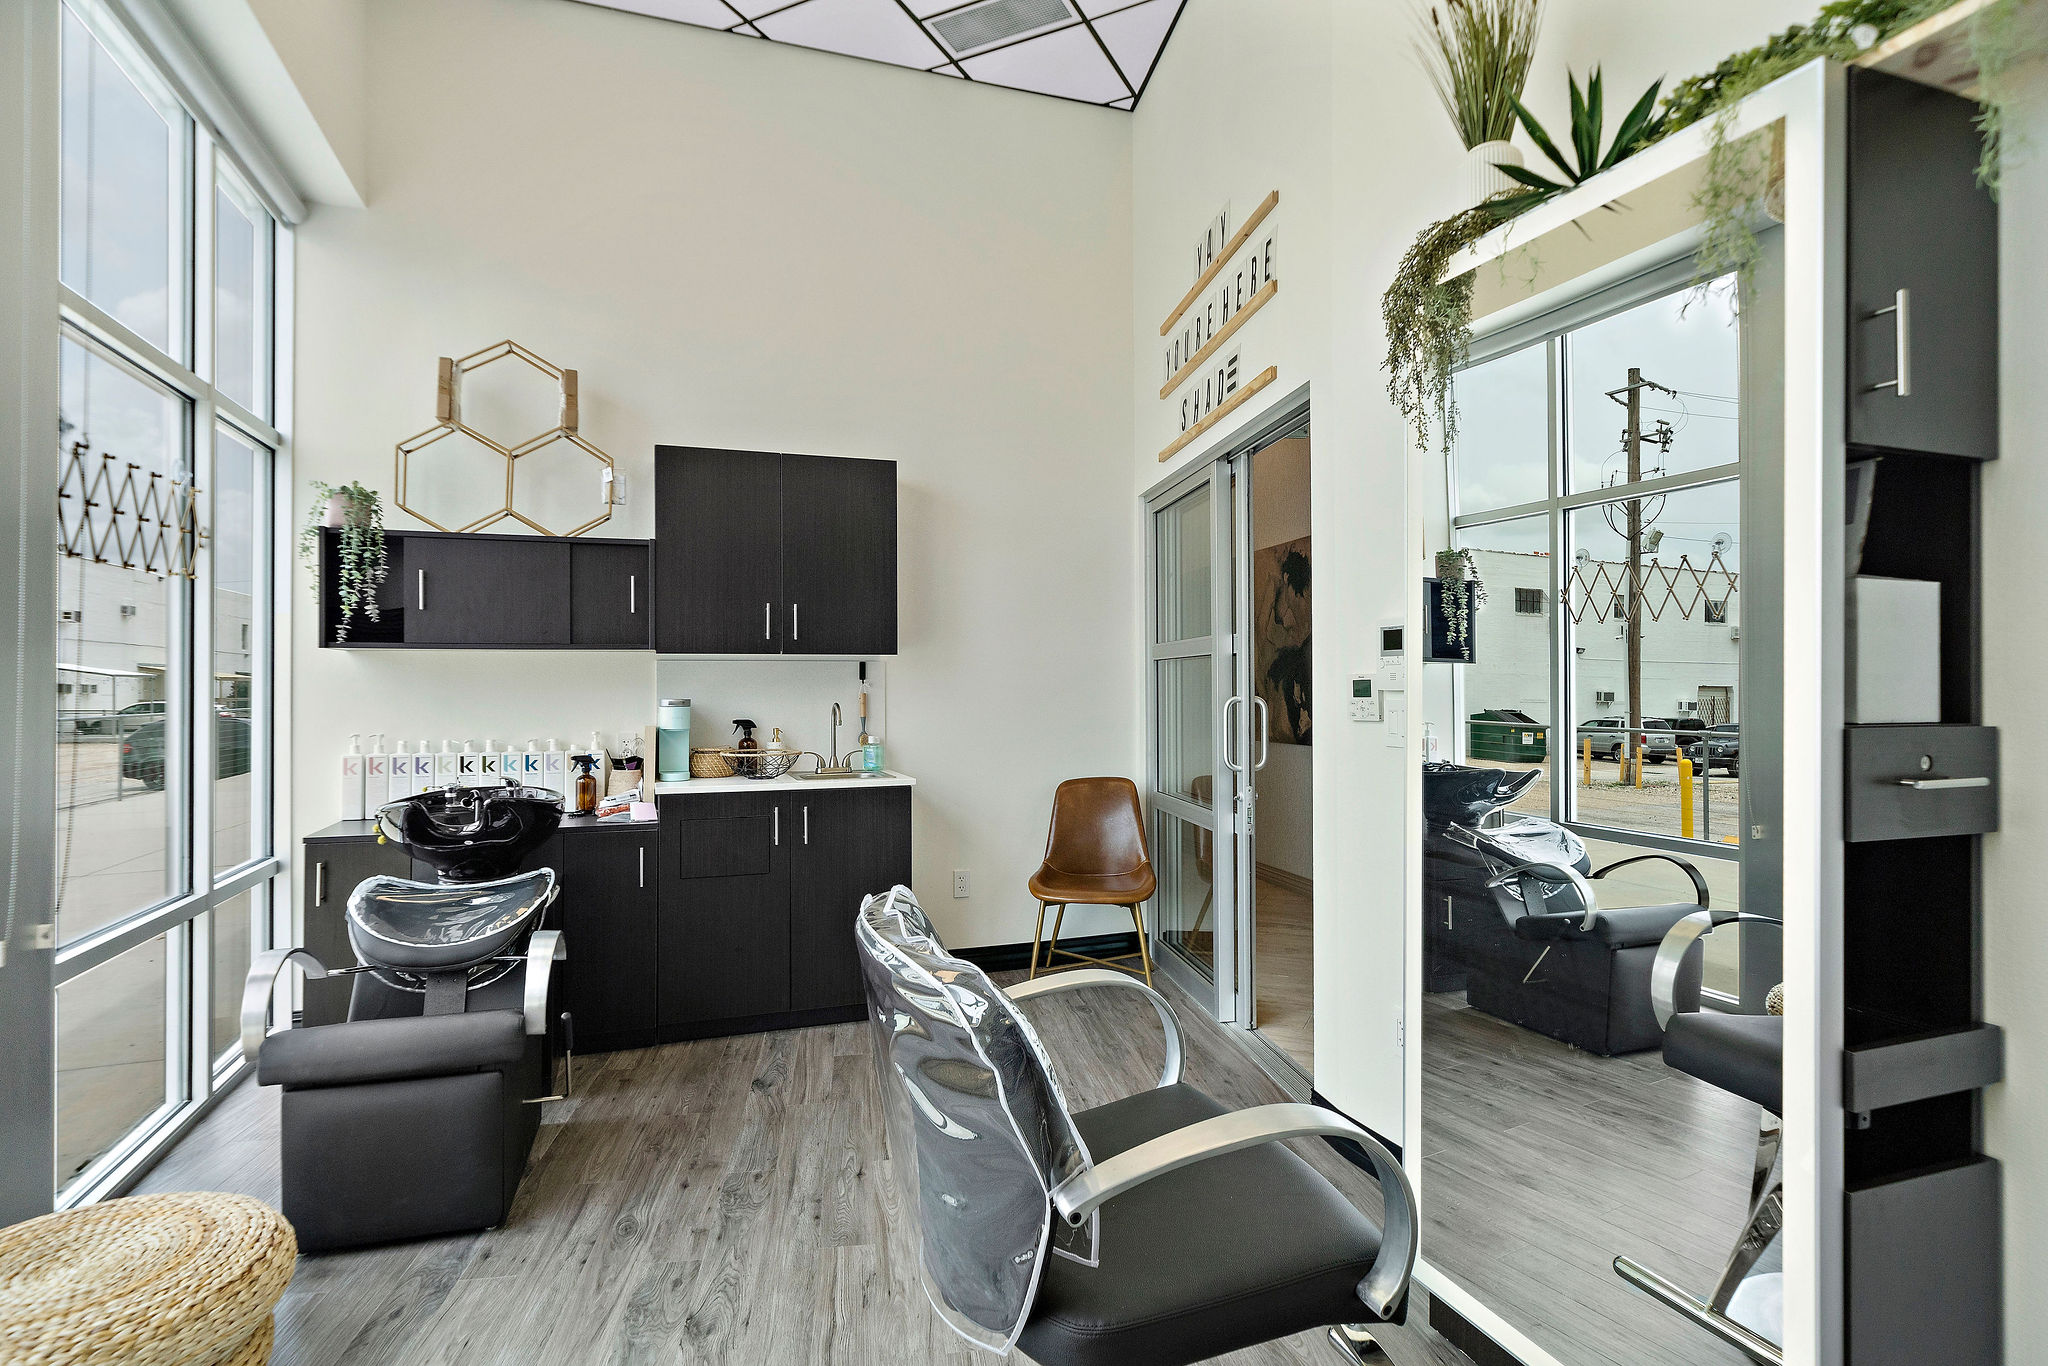 Salon Suites Franchise | Own a My Salon Suite Franchise my salon suites near me